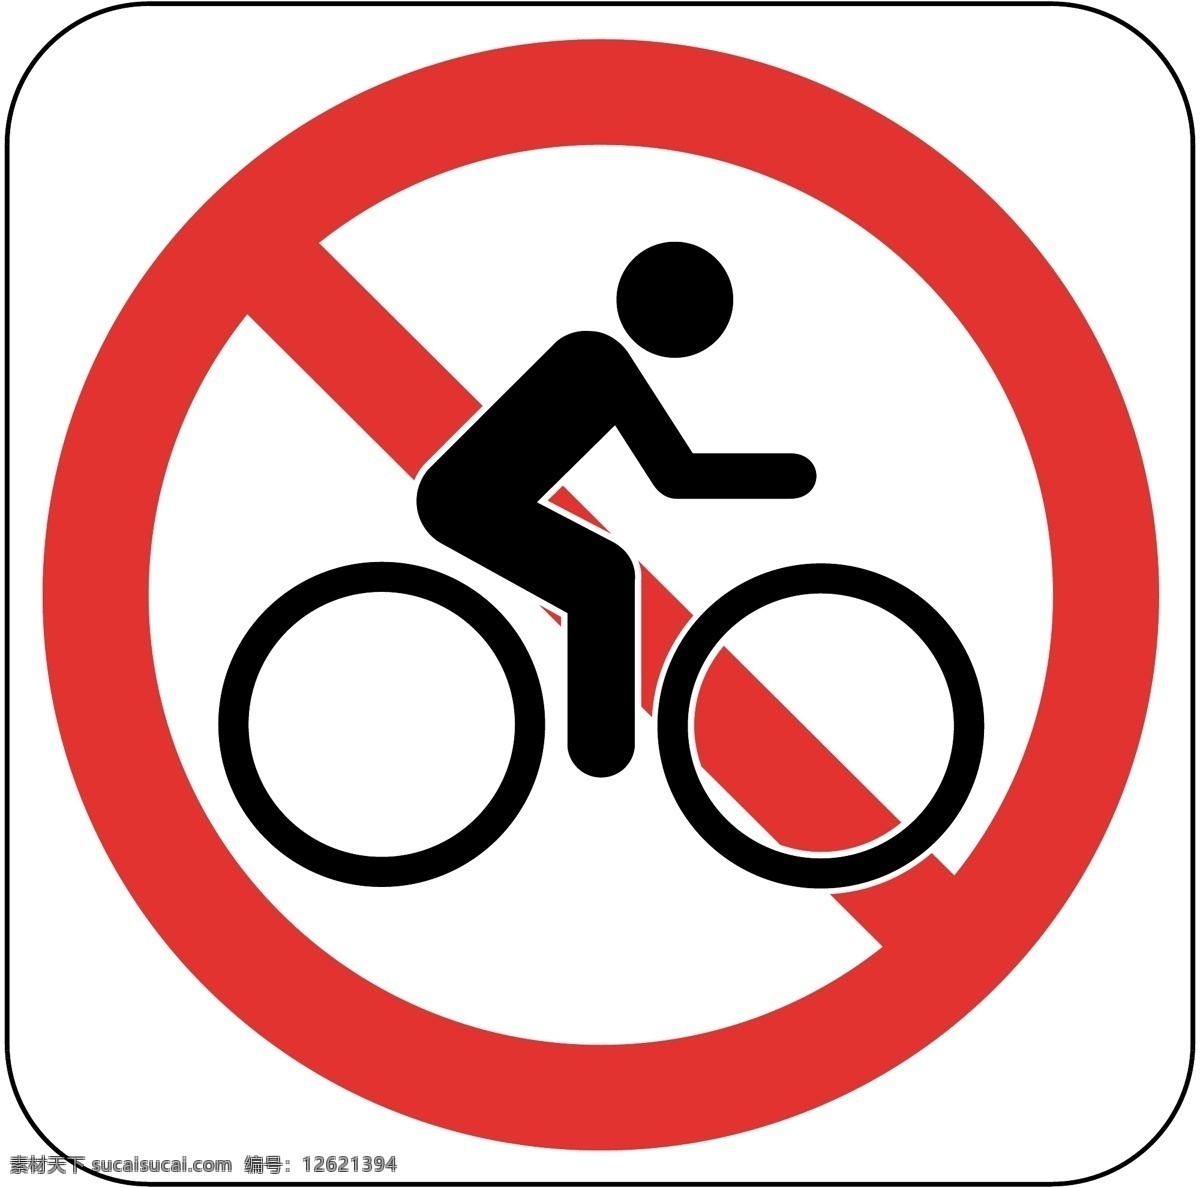 标识 标志 图标 标图 禁止 骑 自行车 提示 电视台标志 小标志 企业 logo 标识标志图标 矢量